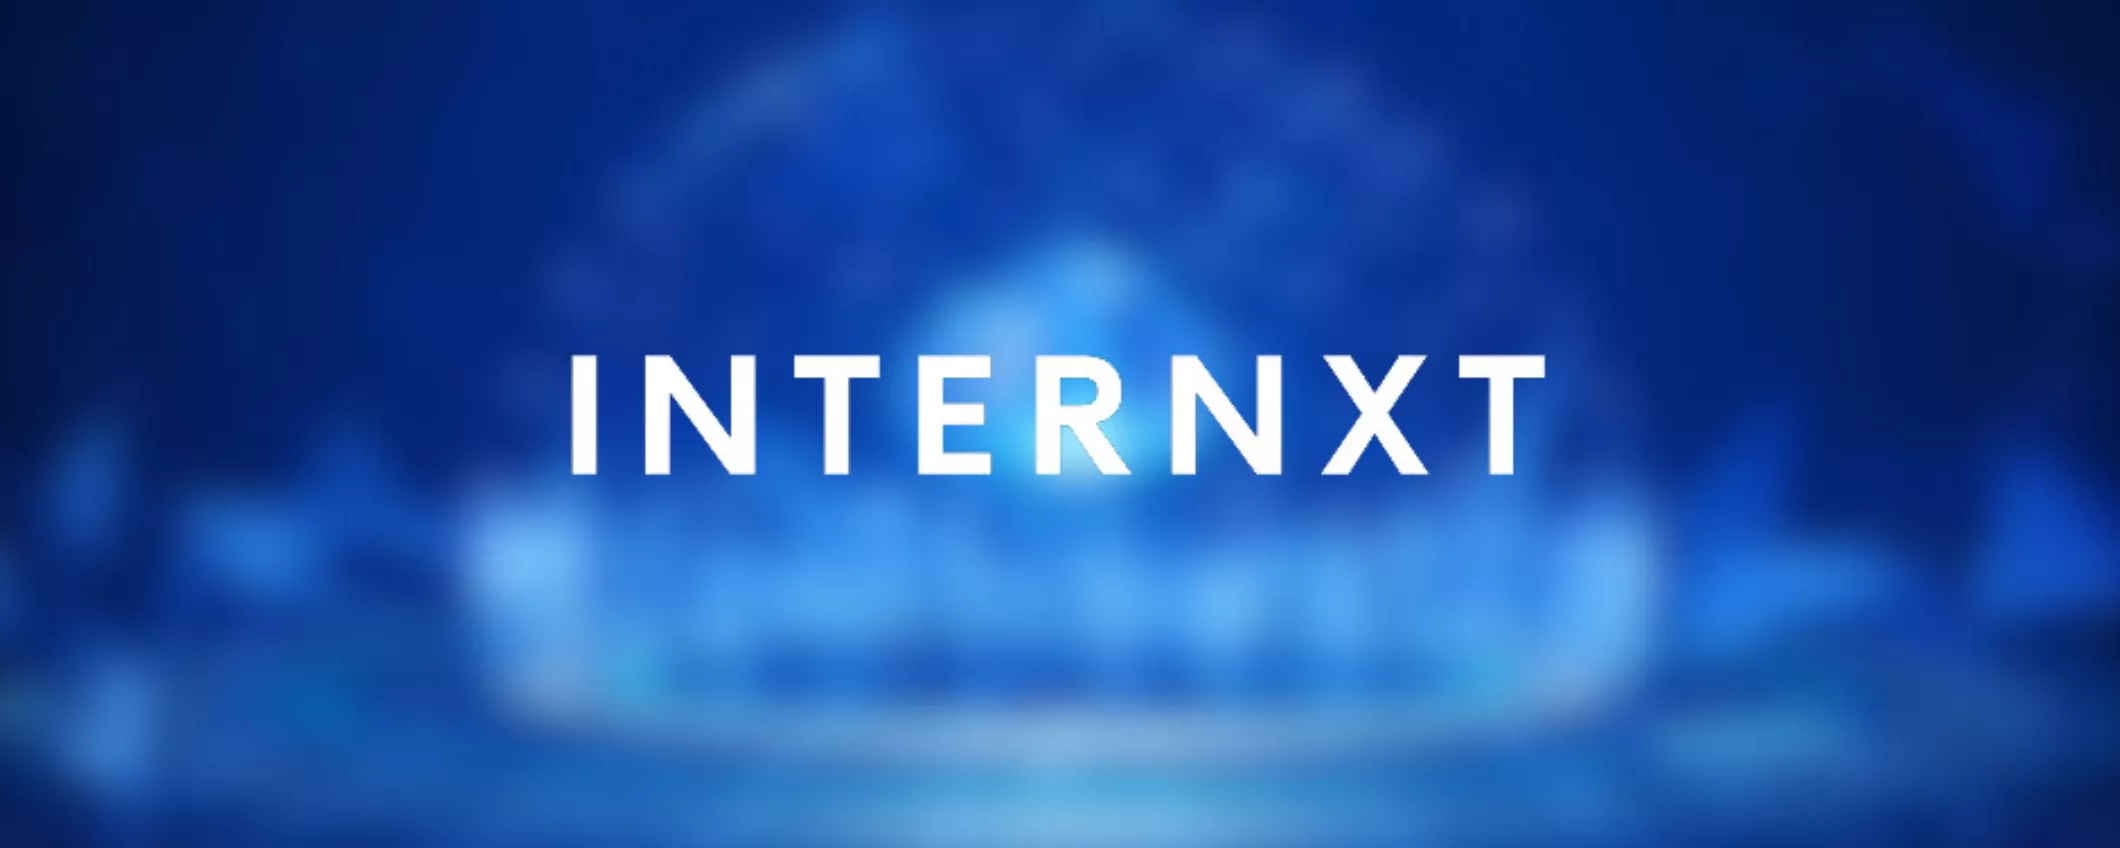 Internxt, scopri il cloud Storage davvero privato e sicuro